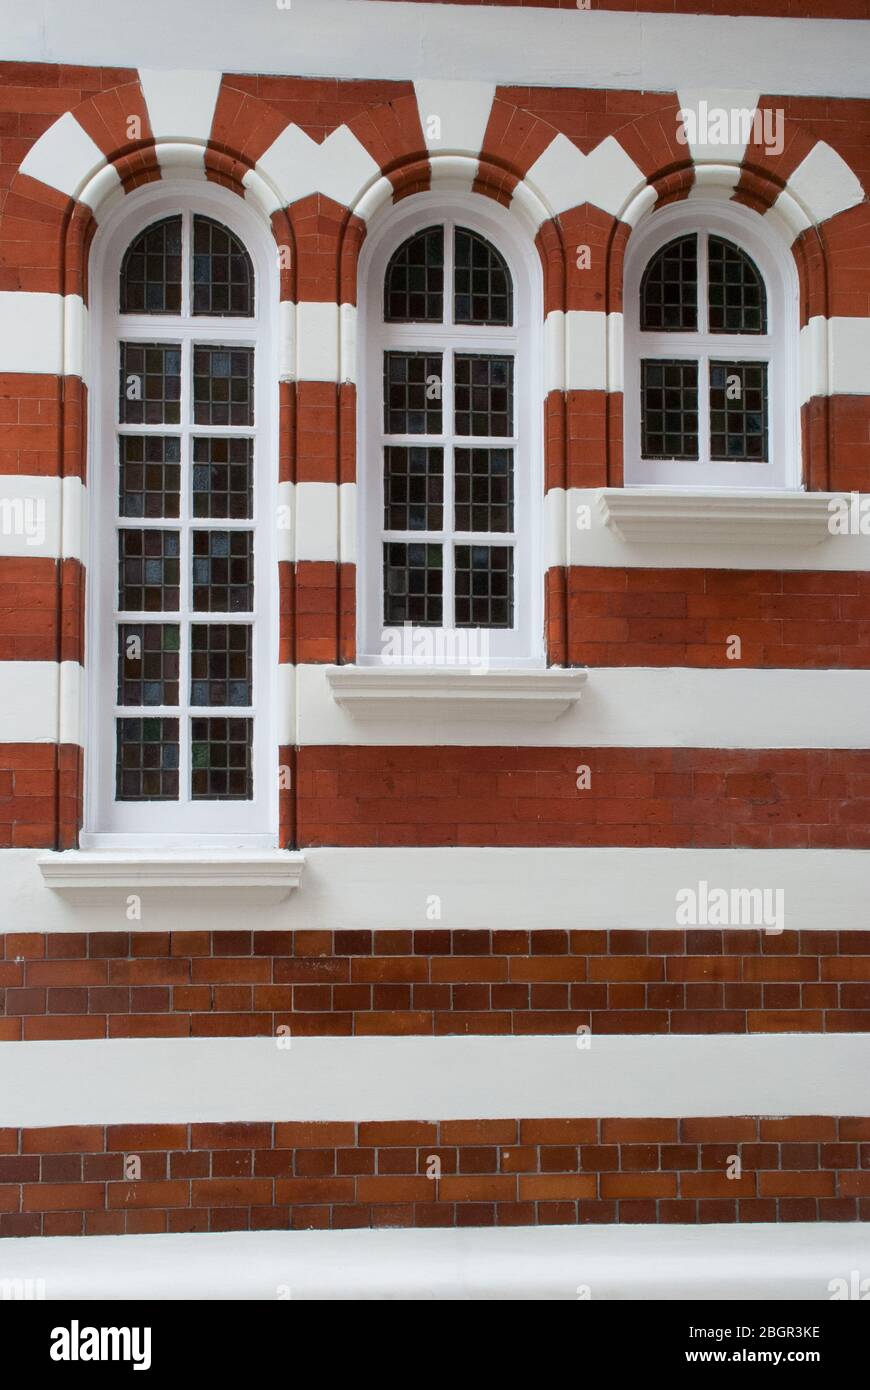 Gruppo di Tall Narrow Windows Brick Brick Red Brick Stone piastrelle Ceramic arcate Windows nella città di Westminster, Londra, SW1 Foto Stock